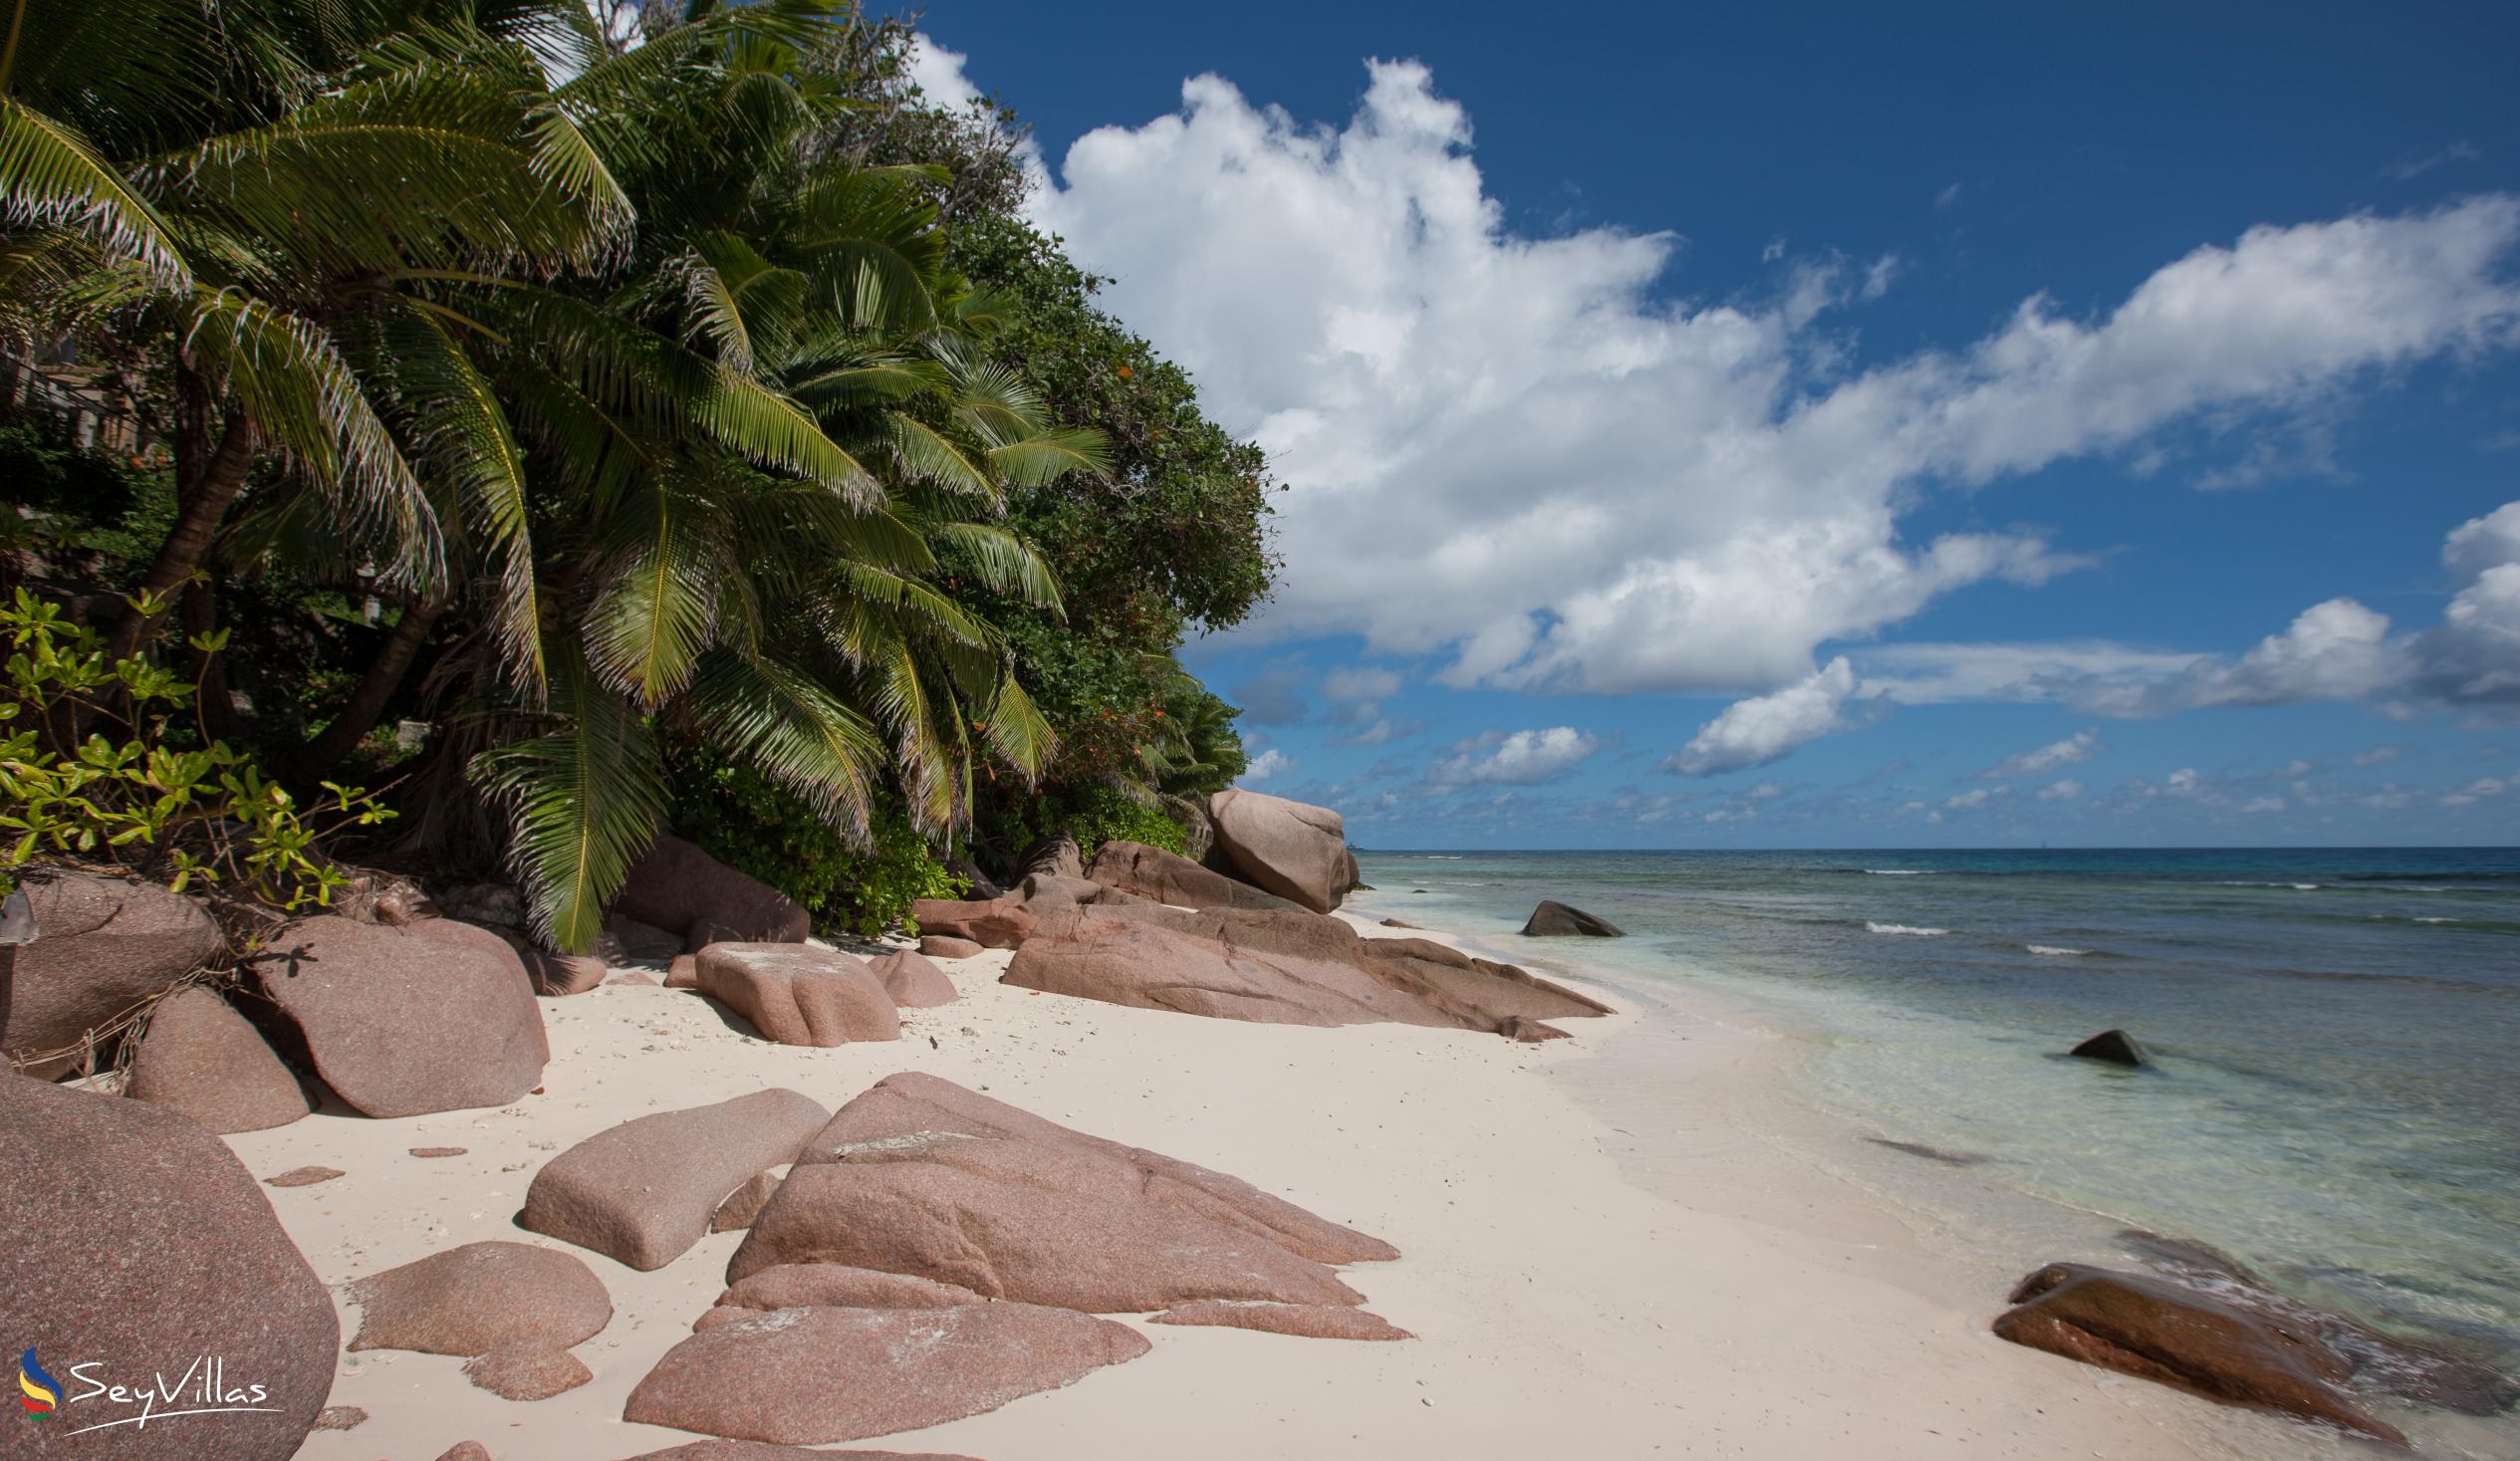 Photo 1: Anse Gaulettes - La Digue (Seychelles)